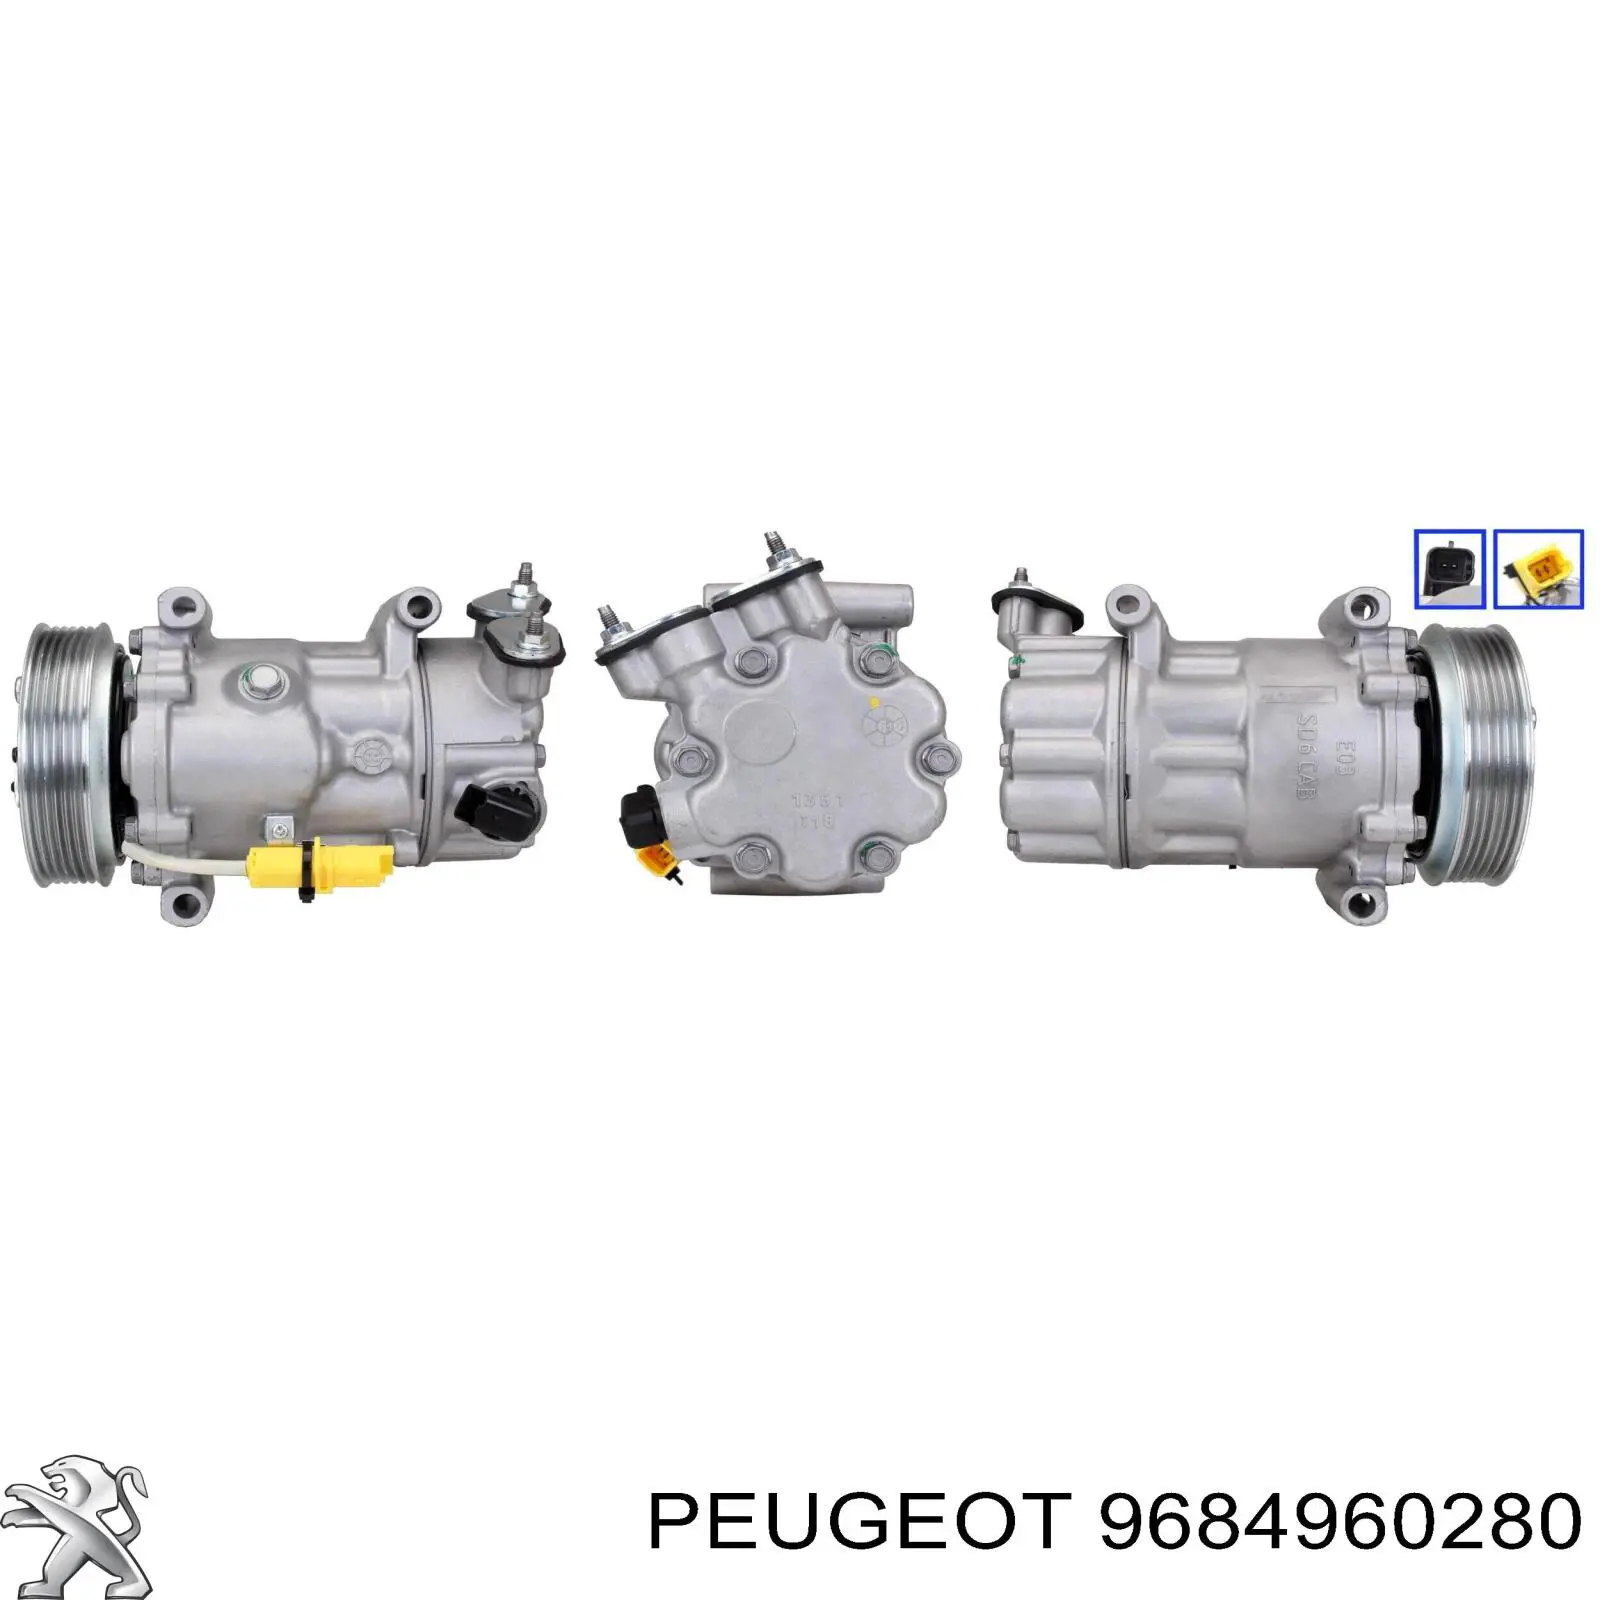 9684960280 Peugeot/Citroen compresor de aire acondicionado